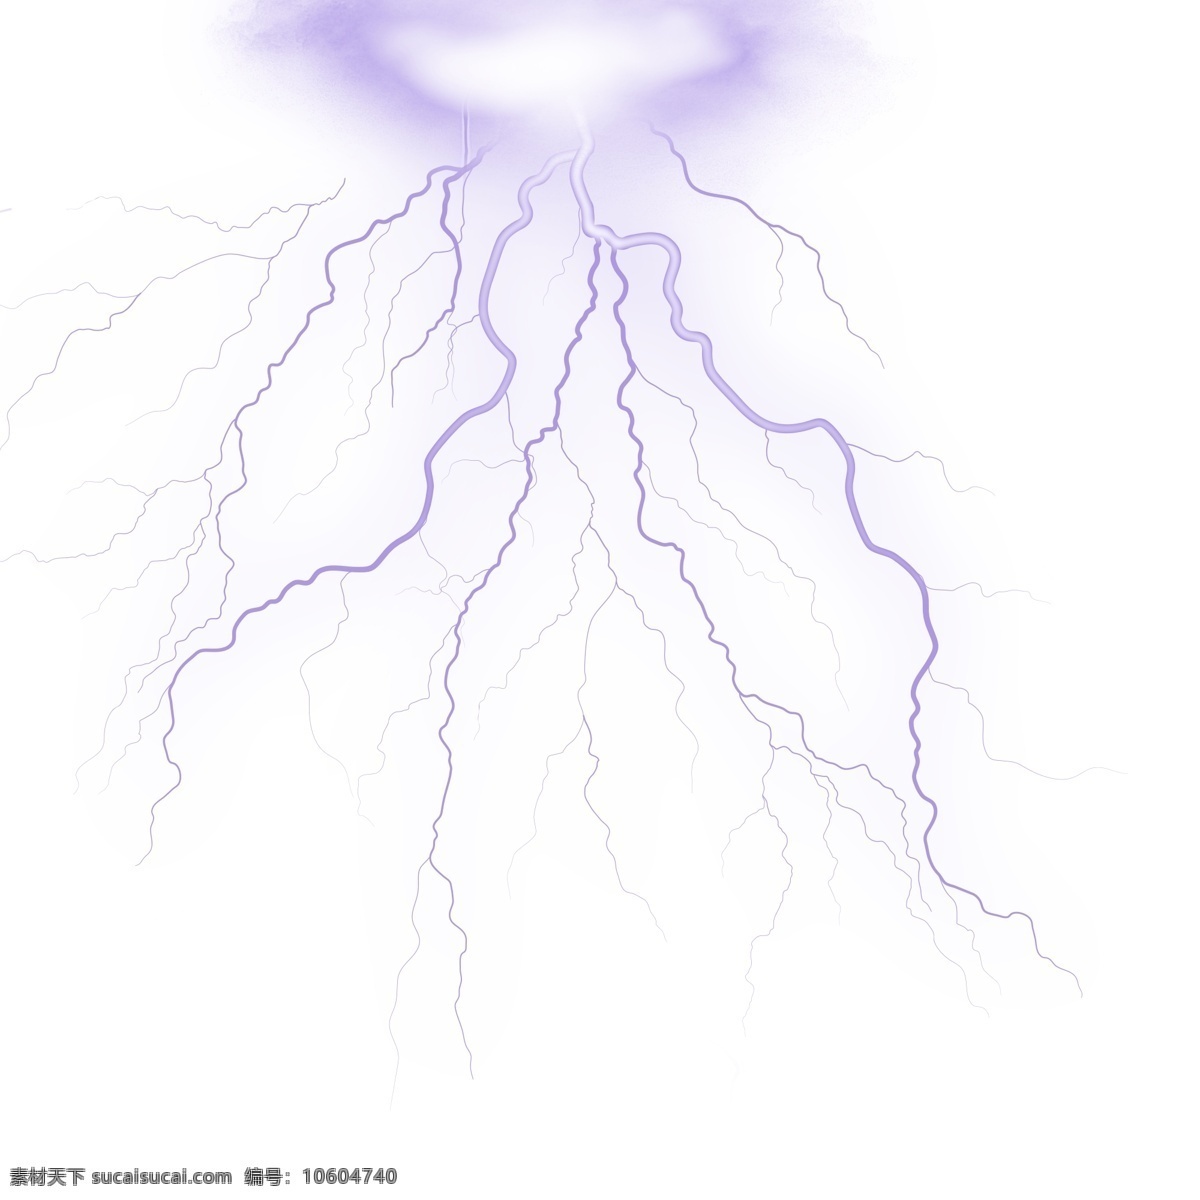 紫色 强烈 枝杈 闪电 光源 逼真强烈闪电 闪电png 闪电psd 闪电设计 电流